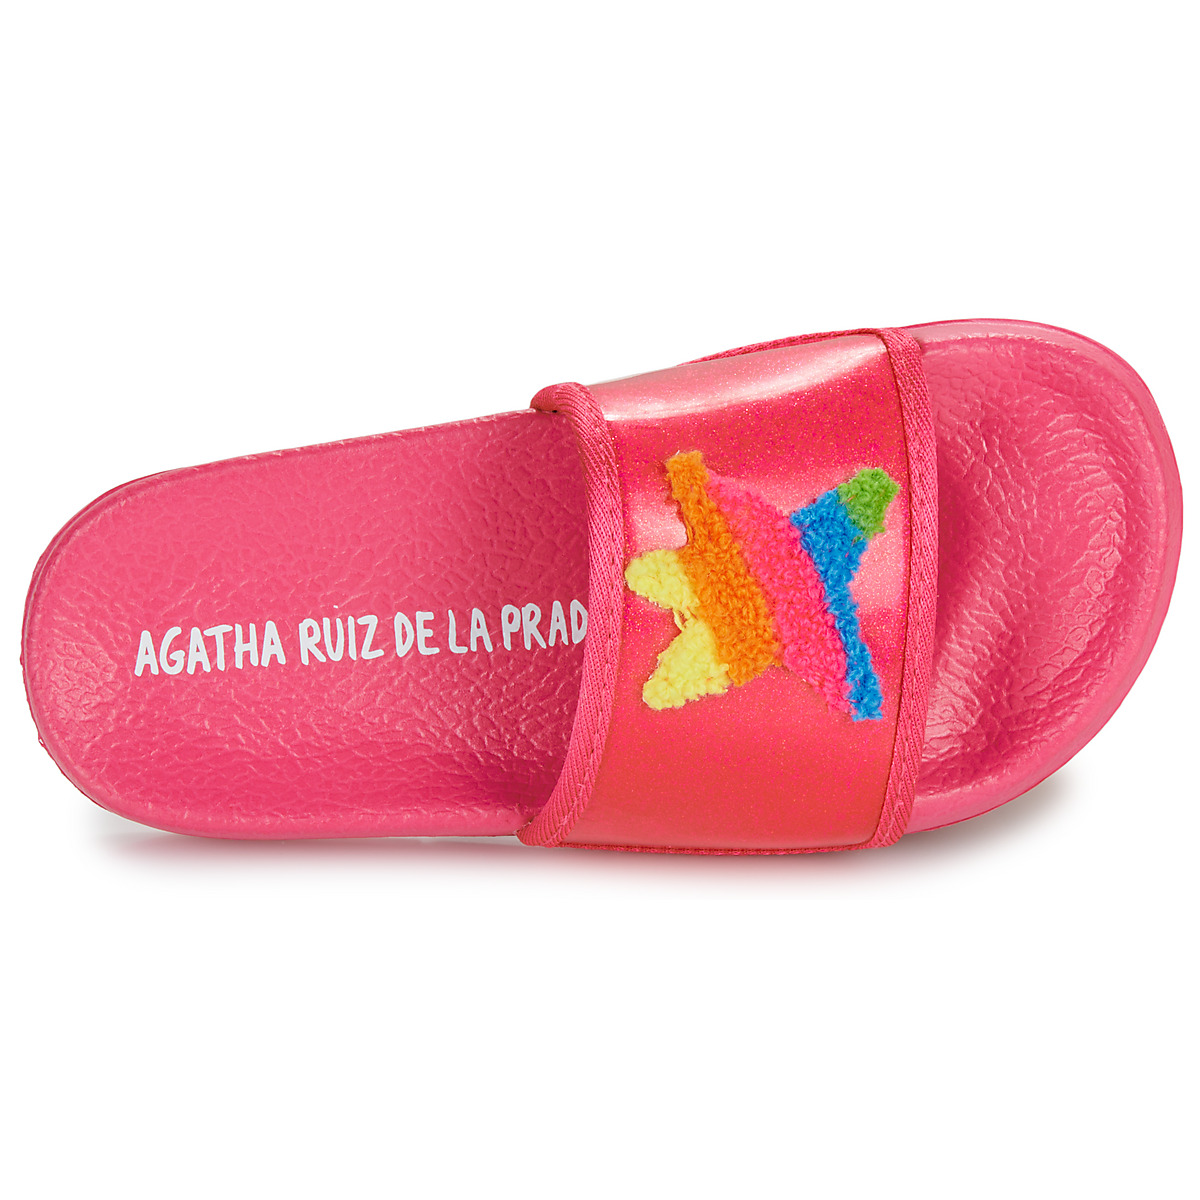 Agatha Ruiz de la Prada Rose / Multicolore FLIP FLOP ESTRELLA 0nQ9c0wL